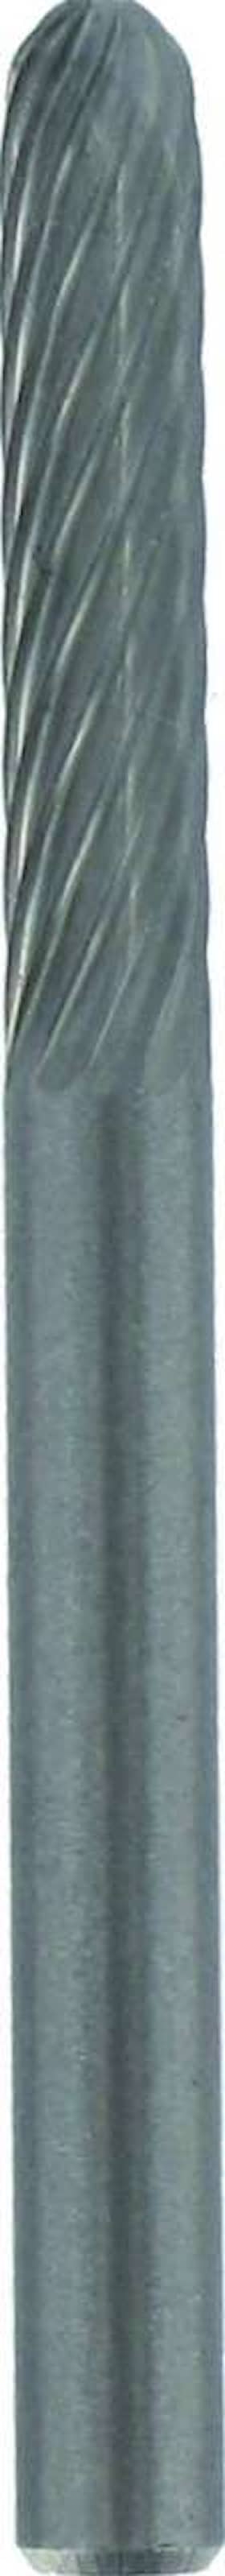 Dremel slibestift karbid 3,2 mm hårdmetal 9903